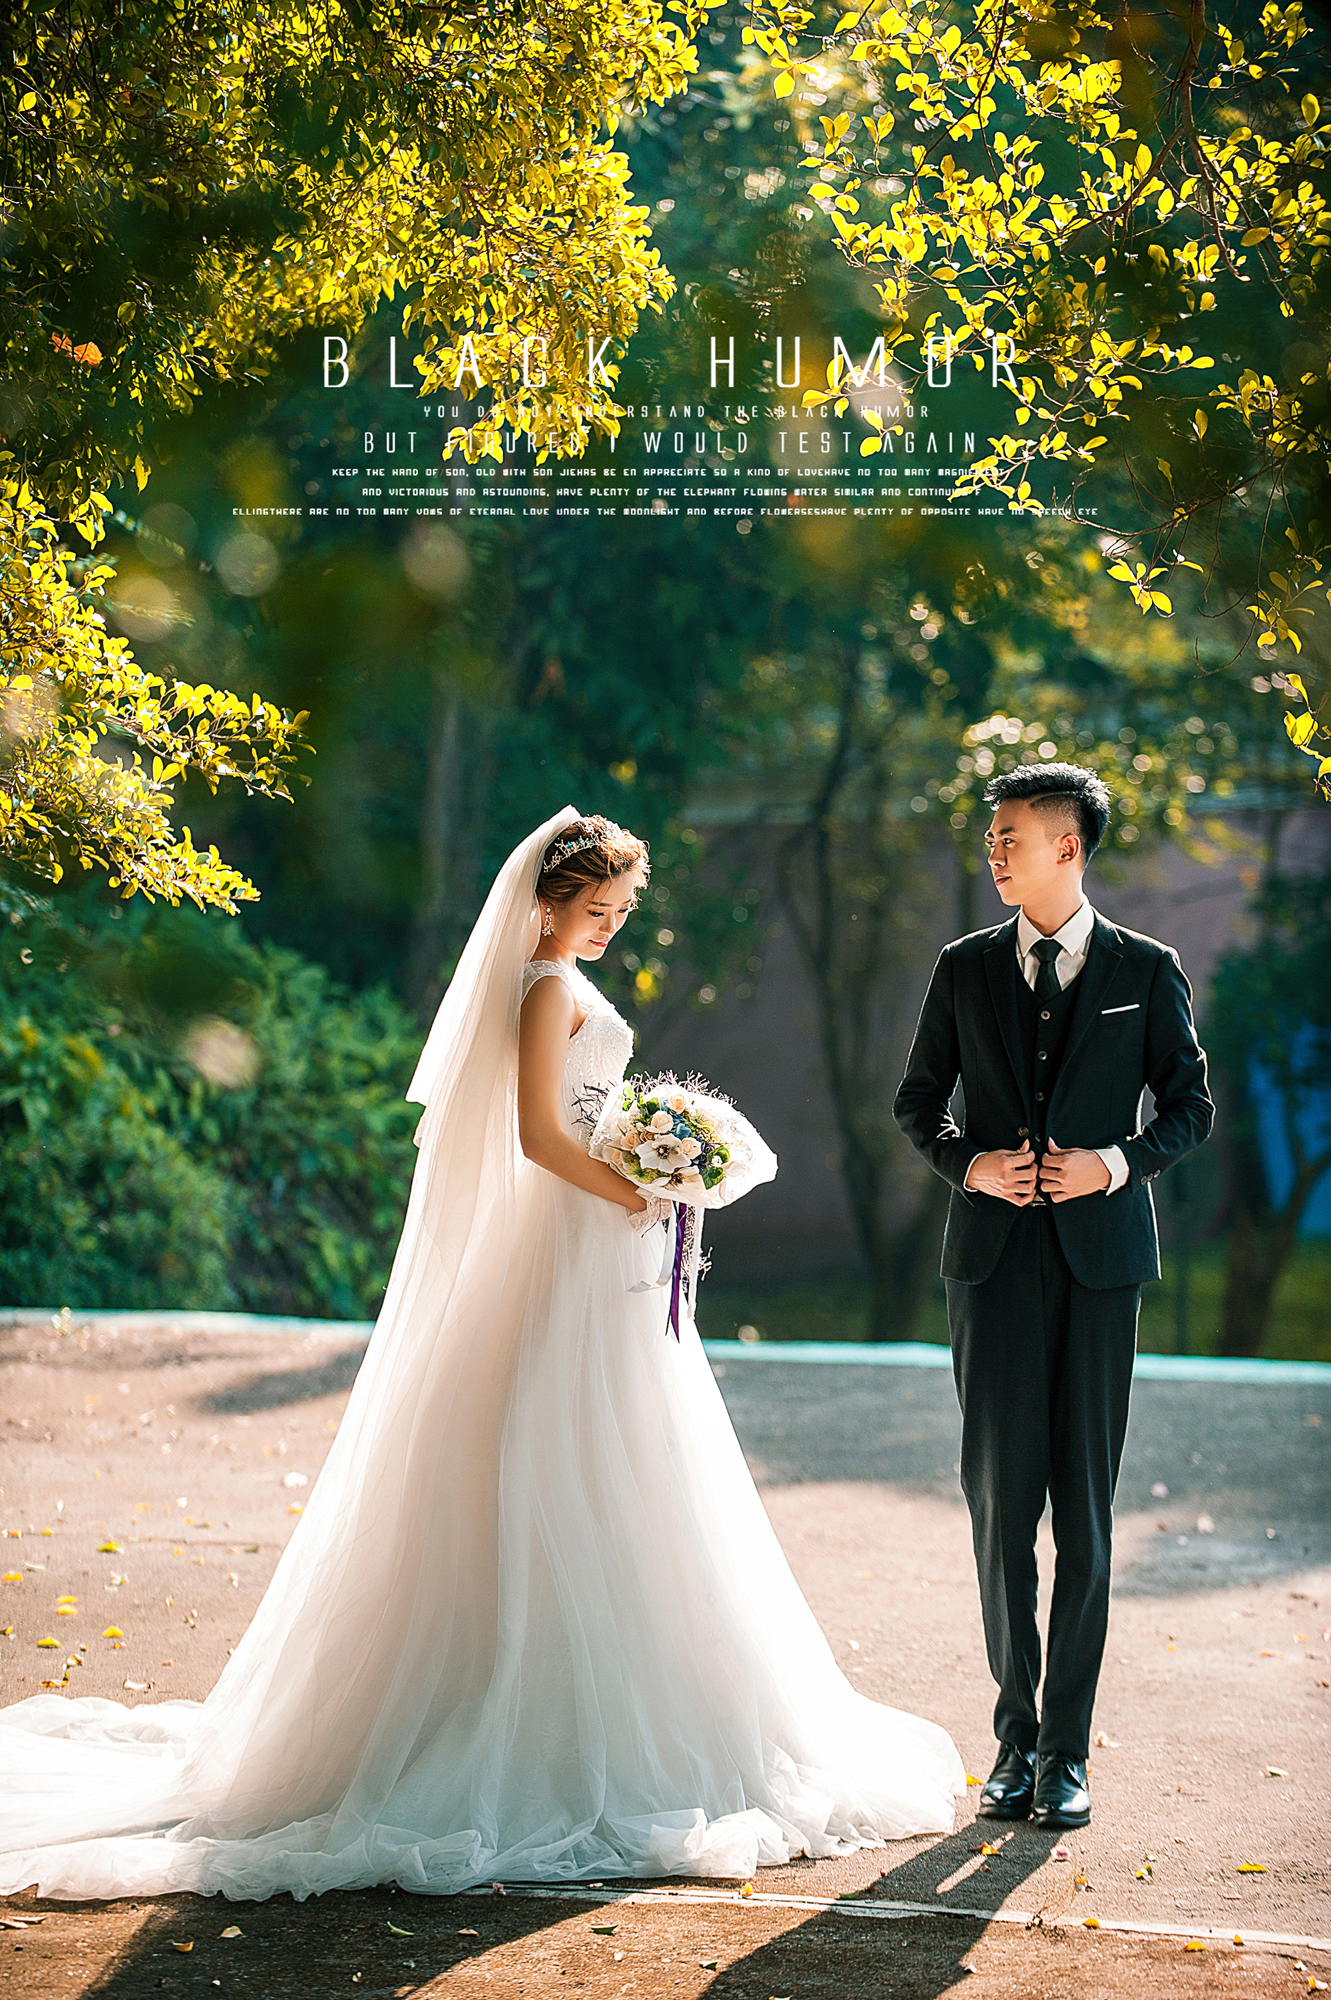 2017年11月广州结婚照,云浮婚纱照,婚纱照图片